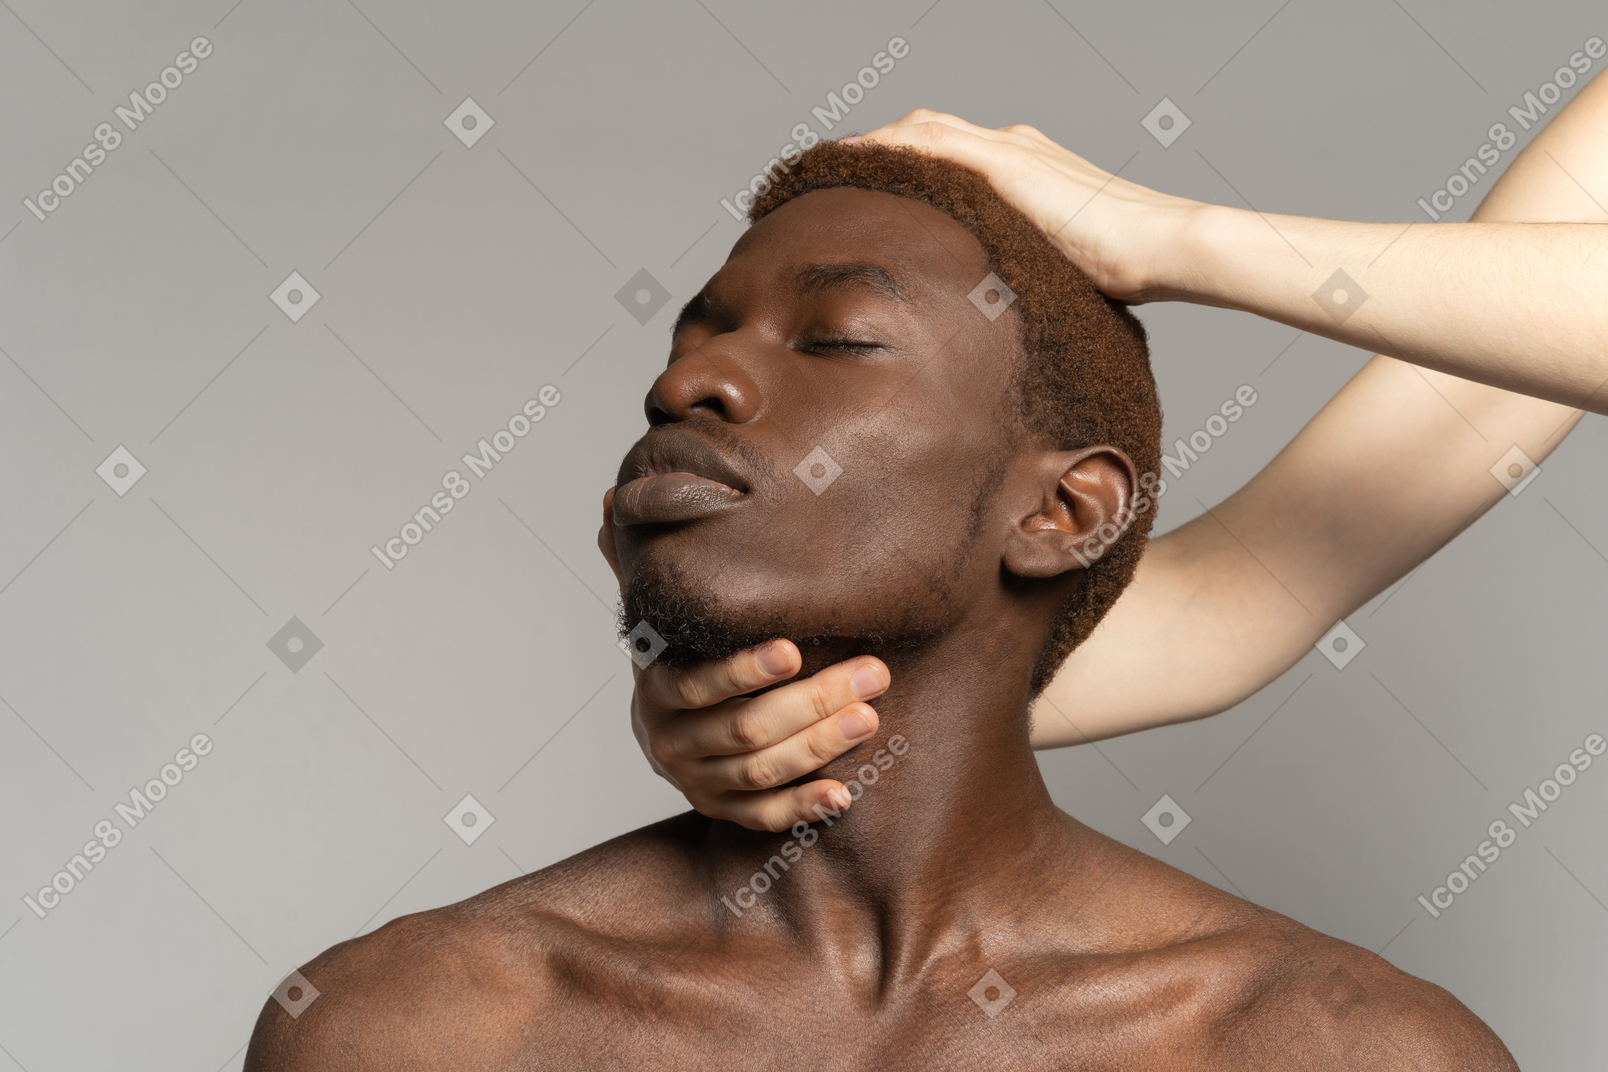 Weiße hand berührt hals und kopf des schwarzen mannes